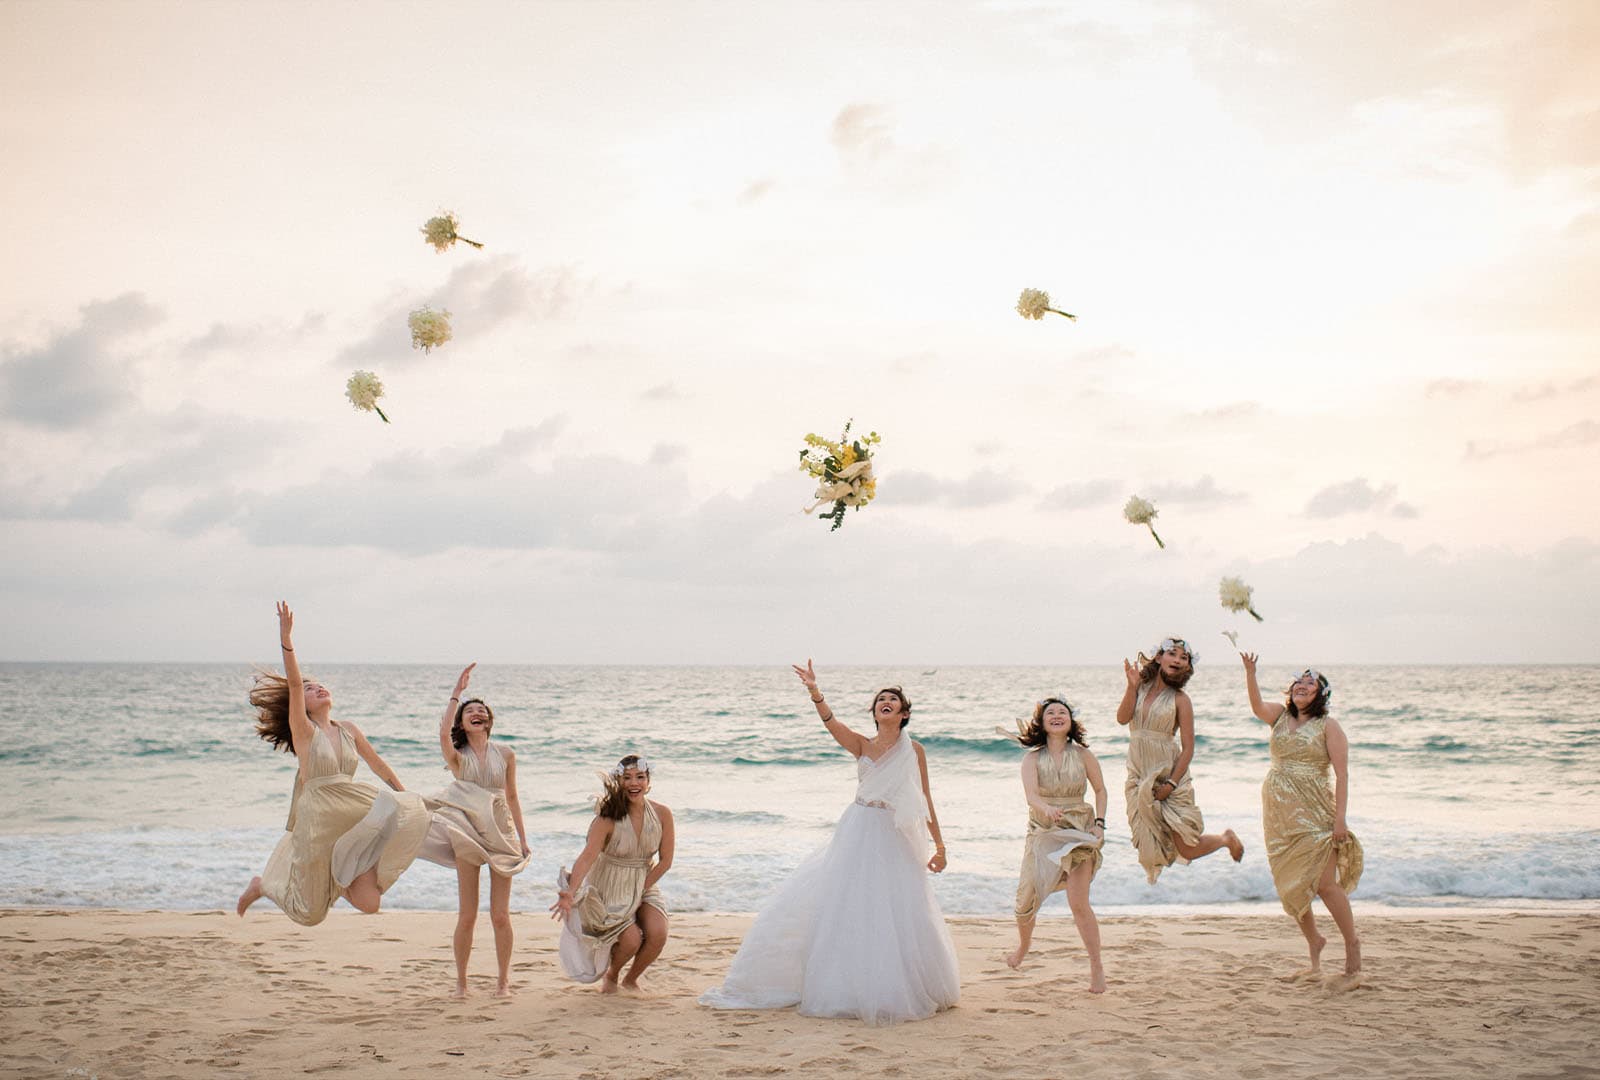 Aleenta Hua Hin Beach Weddings - Your Wedding, Your Way - Aleenta Hua Hin Resort & Spa